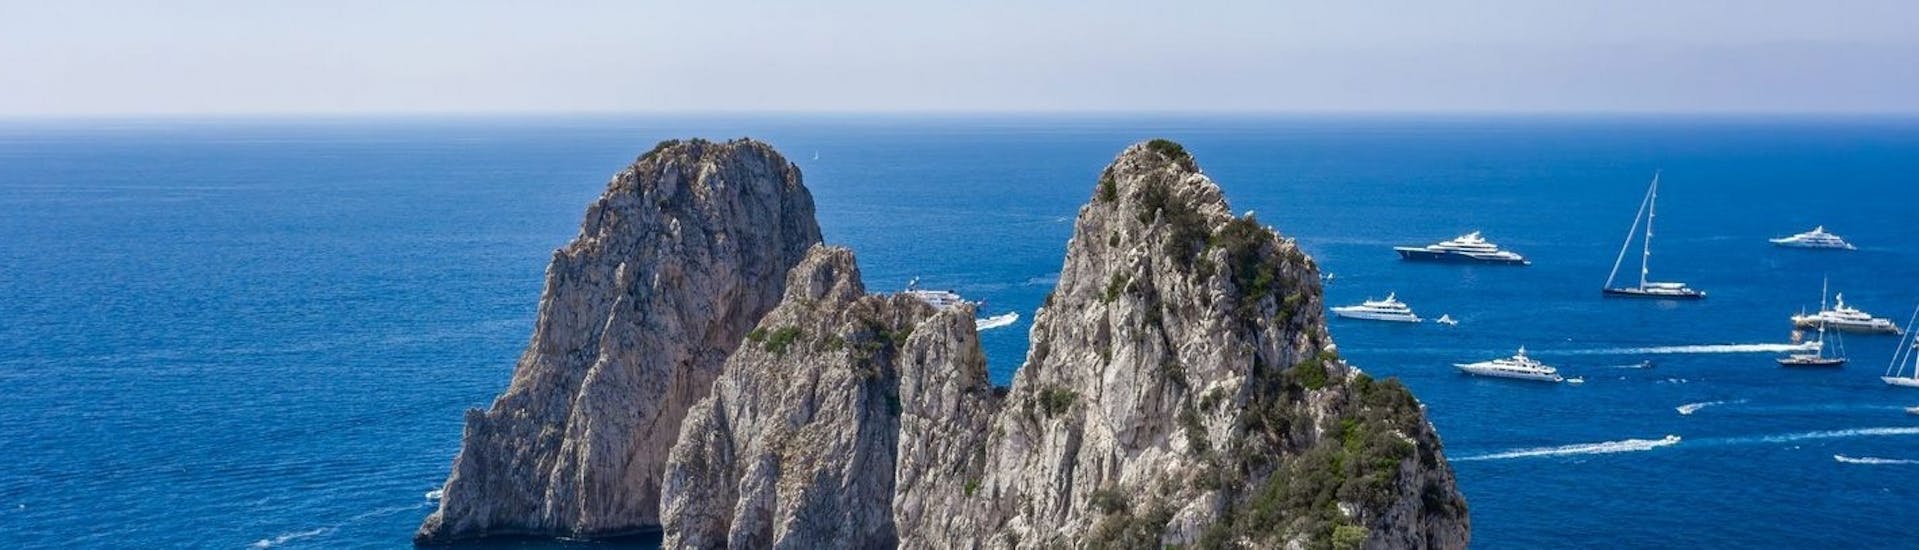 View of the Faraglioni di Capri you can admire during the Boat Trip from Capri to the Blue Grotto with Fiore Sea Excursions Capri.